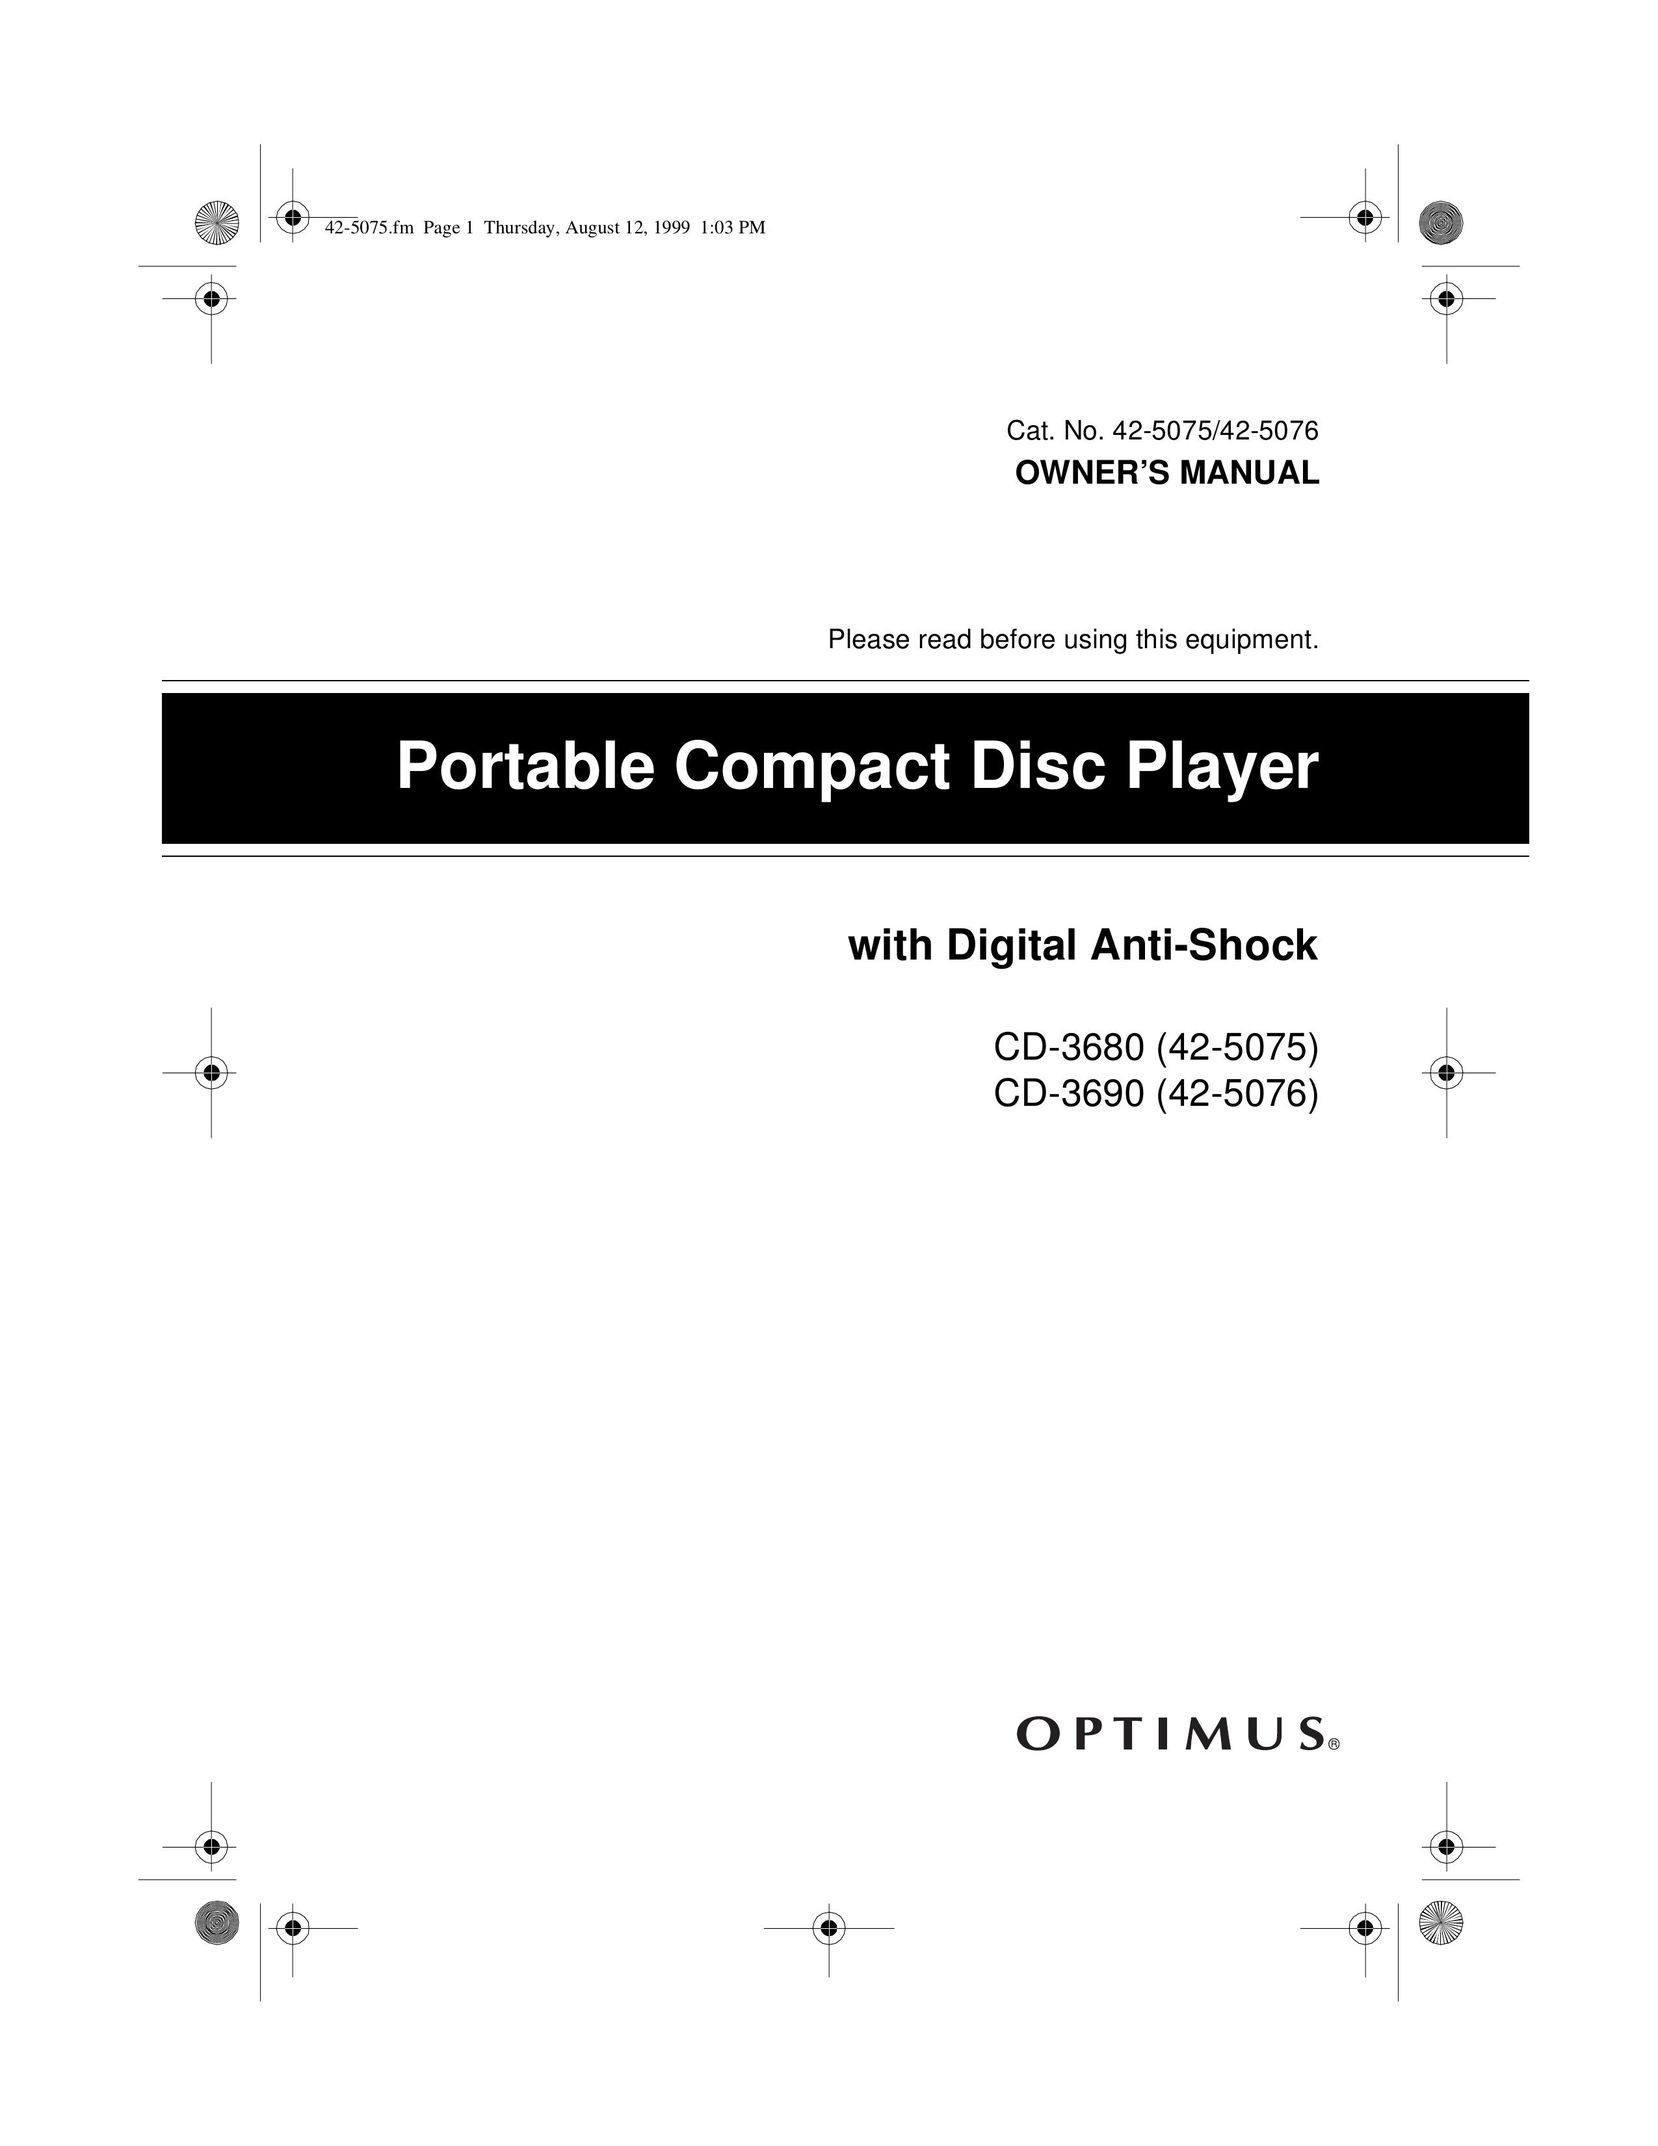 Optimus CD-3690 (42-5076) CD Player User Manual